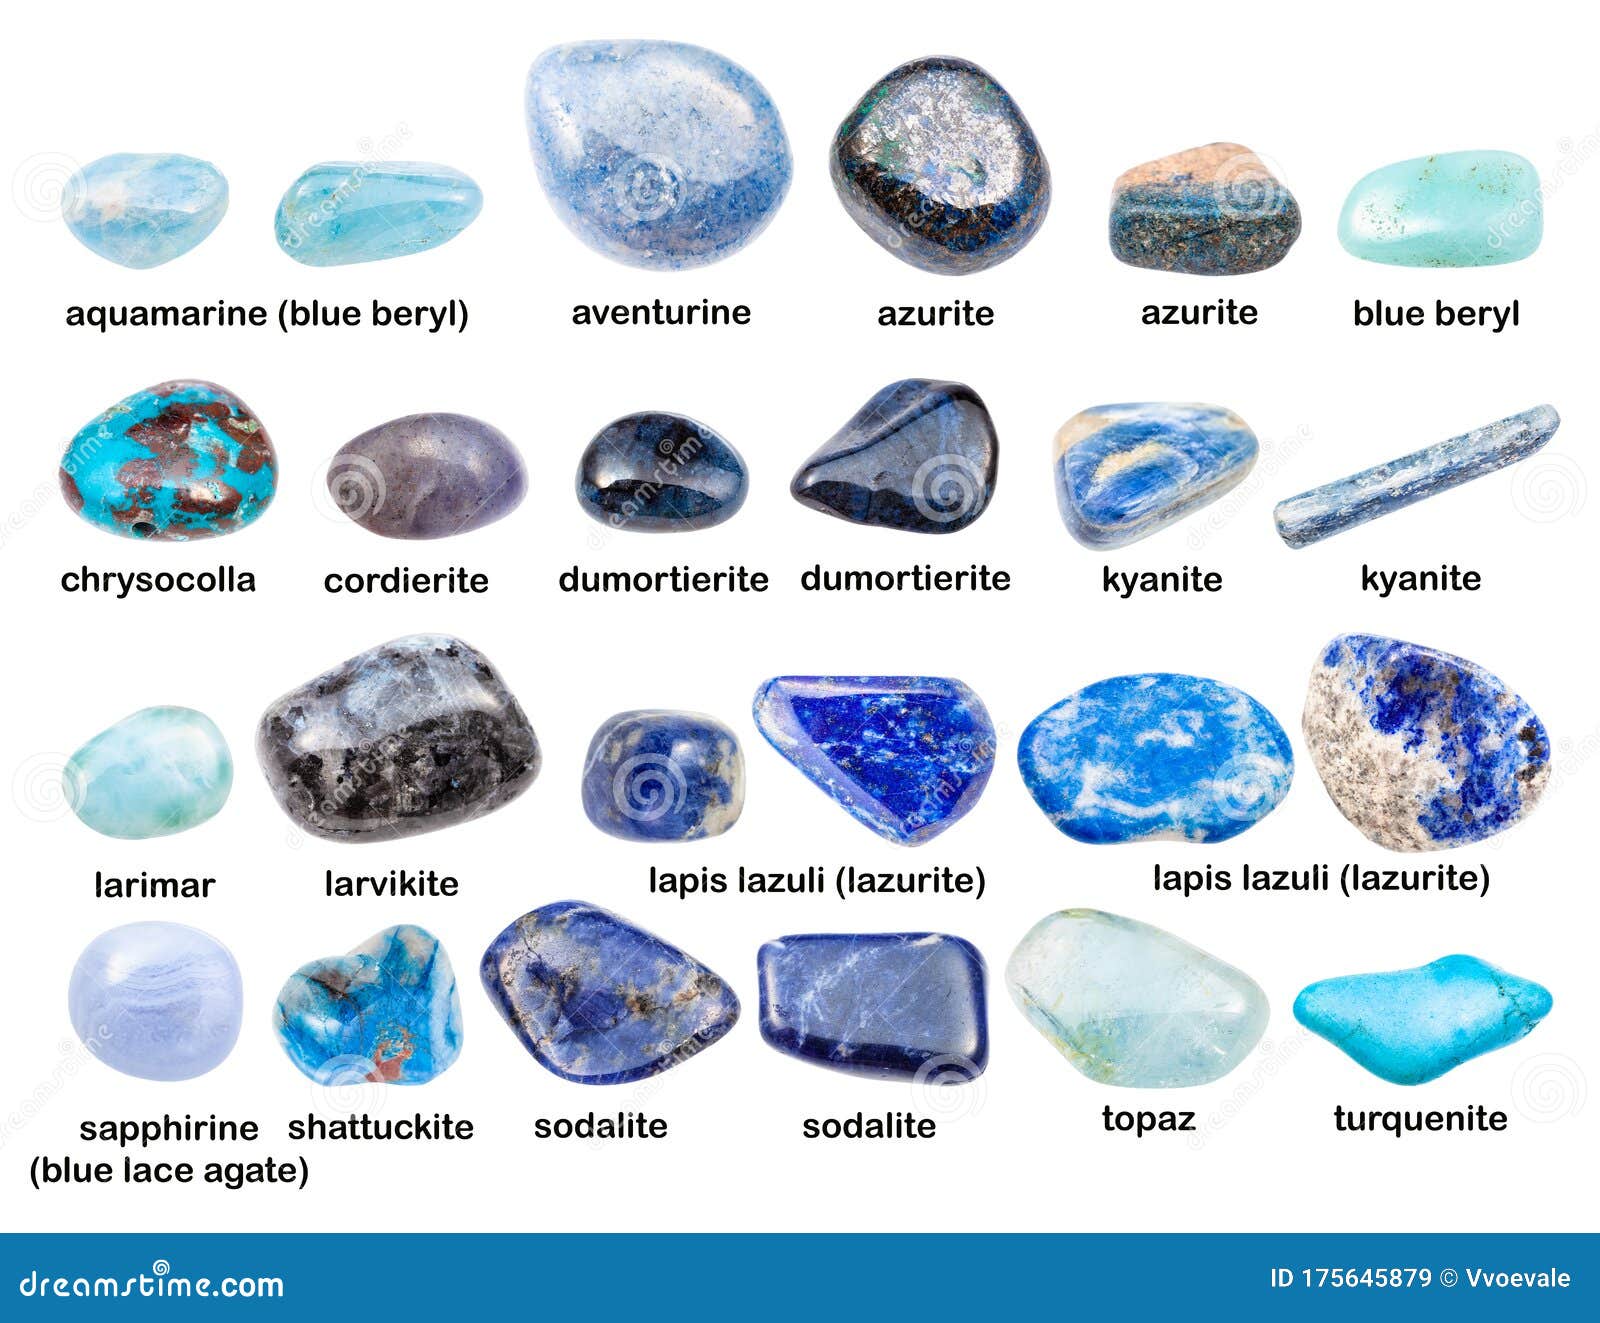 Names Of Light Blue Stones | vlr.eng.br